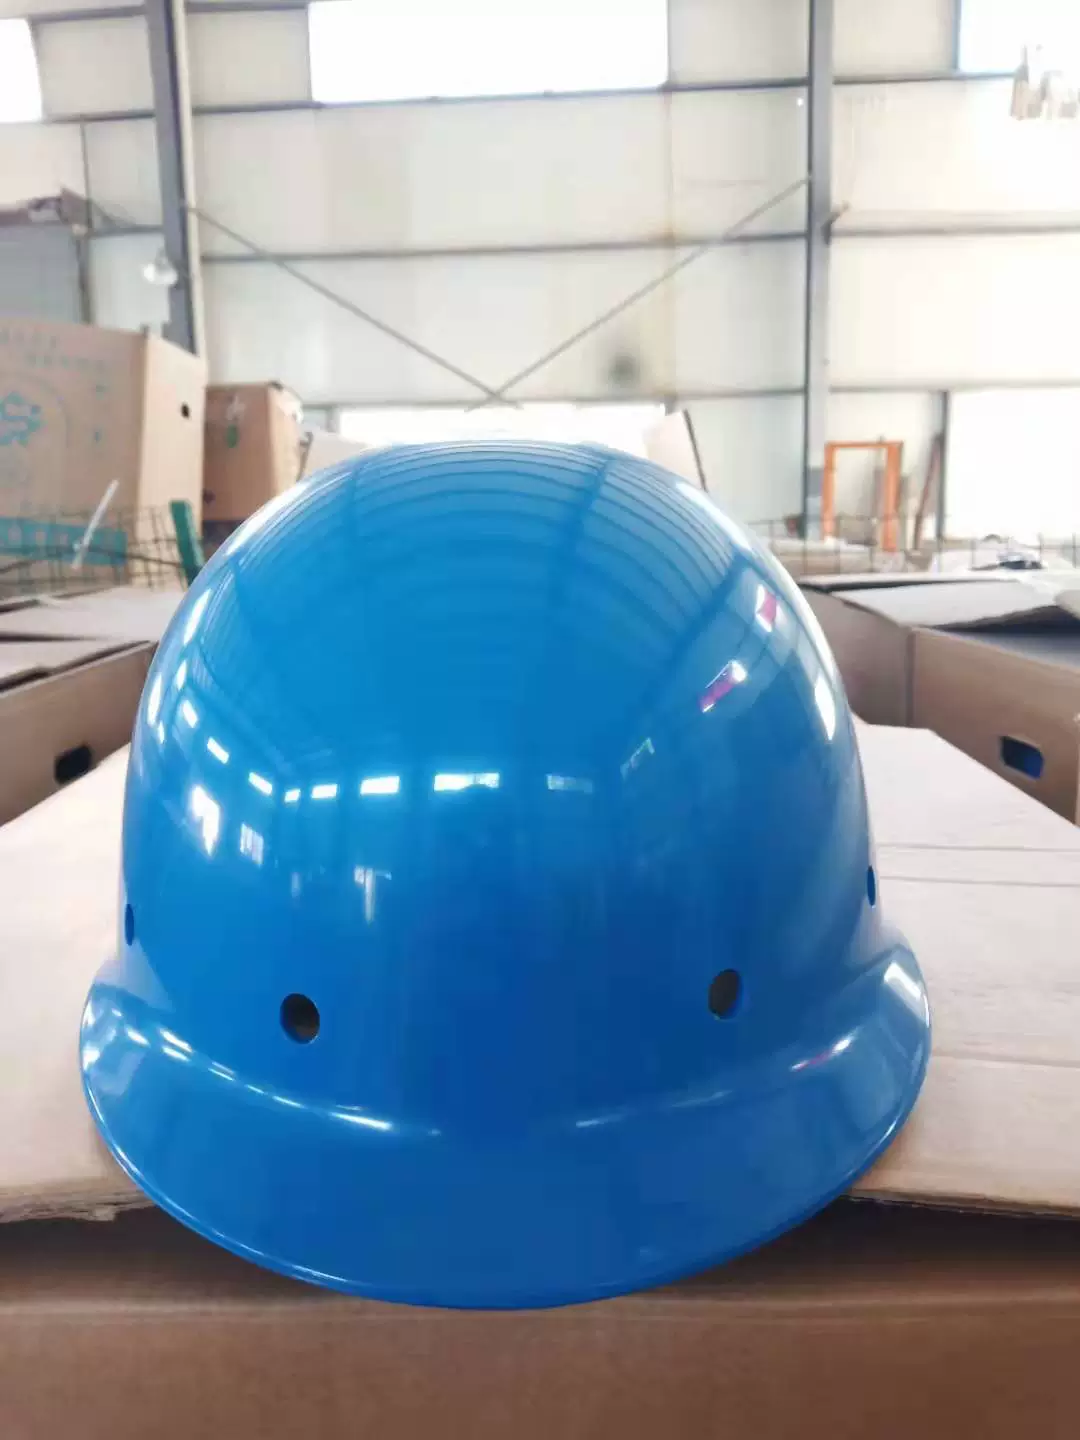 mũ kỹ sư xây dựng Mũ bảo hiểm công trường xây dựng Mũ bảo hiểm nhựa nội địa thương hiệu Jingjie loại 014 A có núm và khóa tời mũ công trường mũ bảo hộ thùy dương 